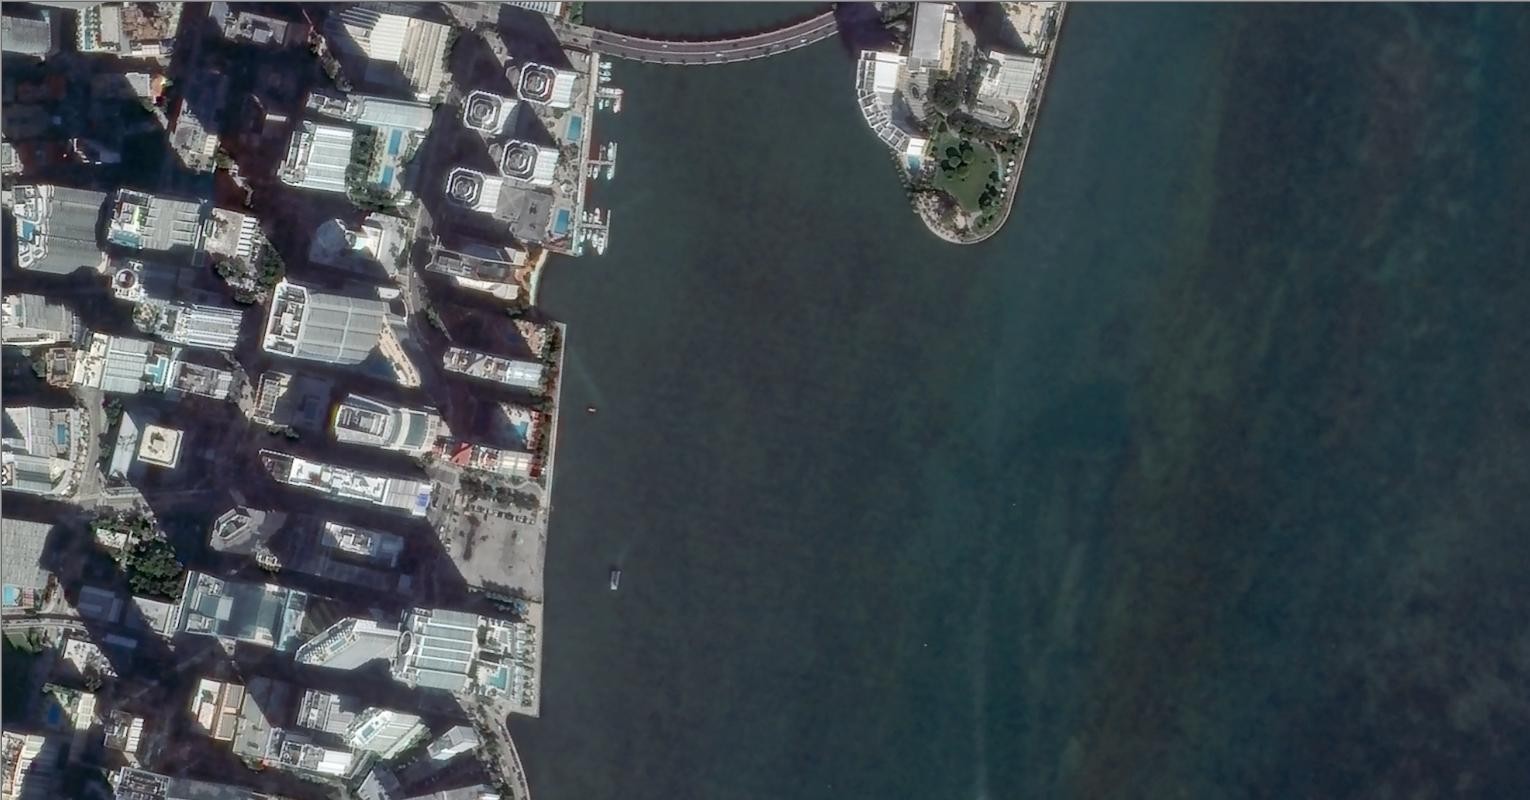 吉林一号拍摄的迈阿密卫星图